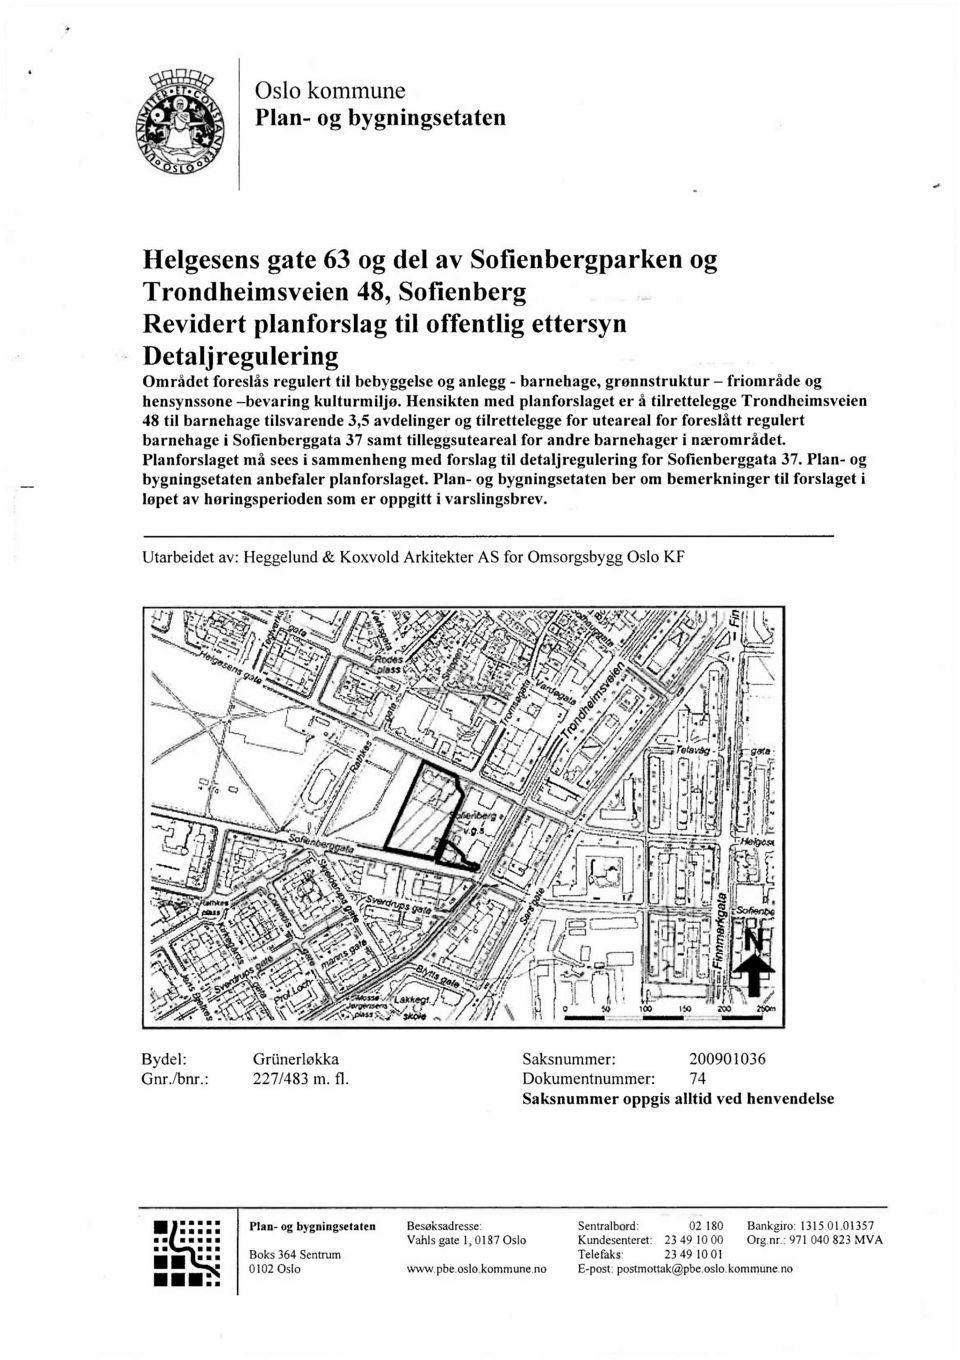 Hensikten med planforslaget er å tilrettelegge Trondheimsveien 48 til barnehage tilsvarende 3,5 avdelinger og tilrettelegge for uteareal for foreslått regulert barnehage i Sofienberggata 37 samt